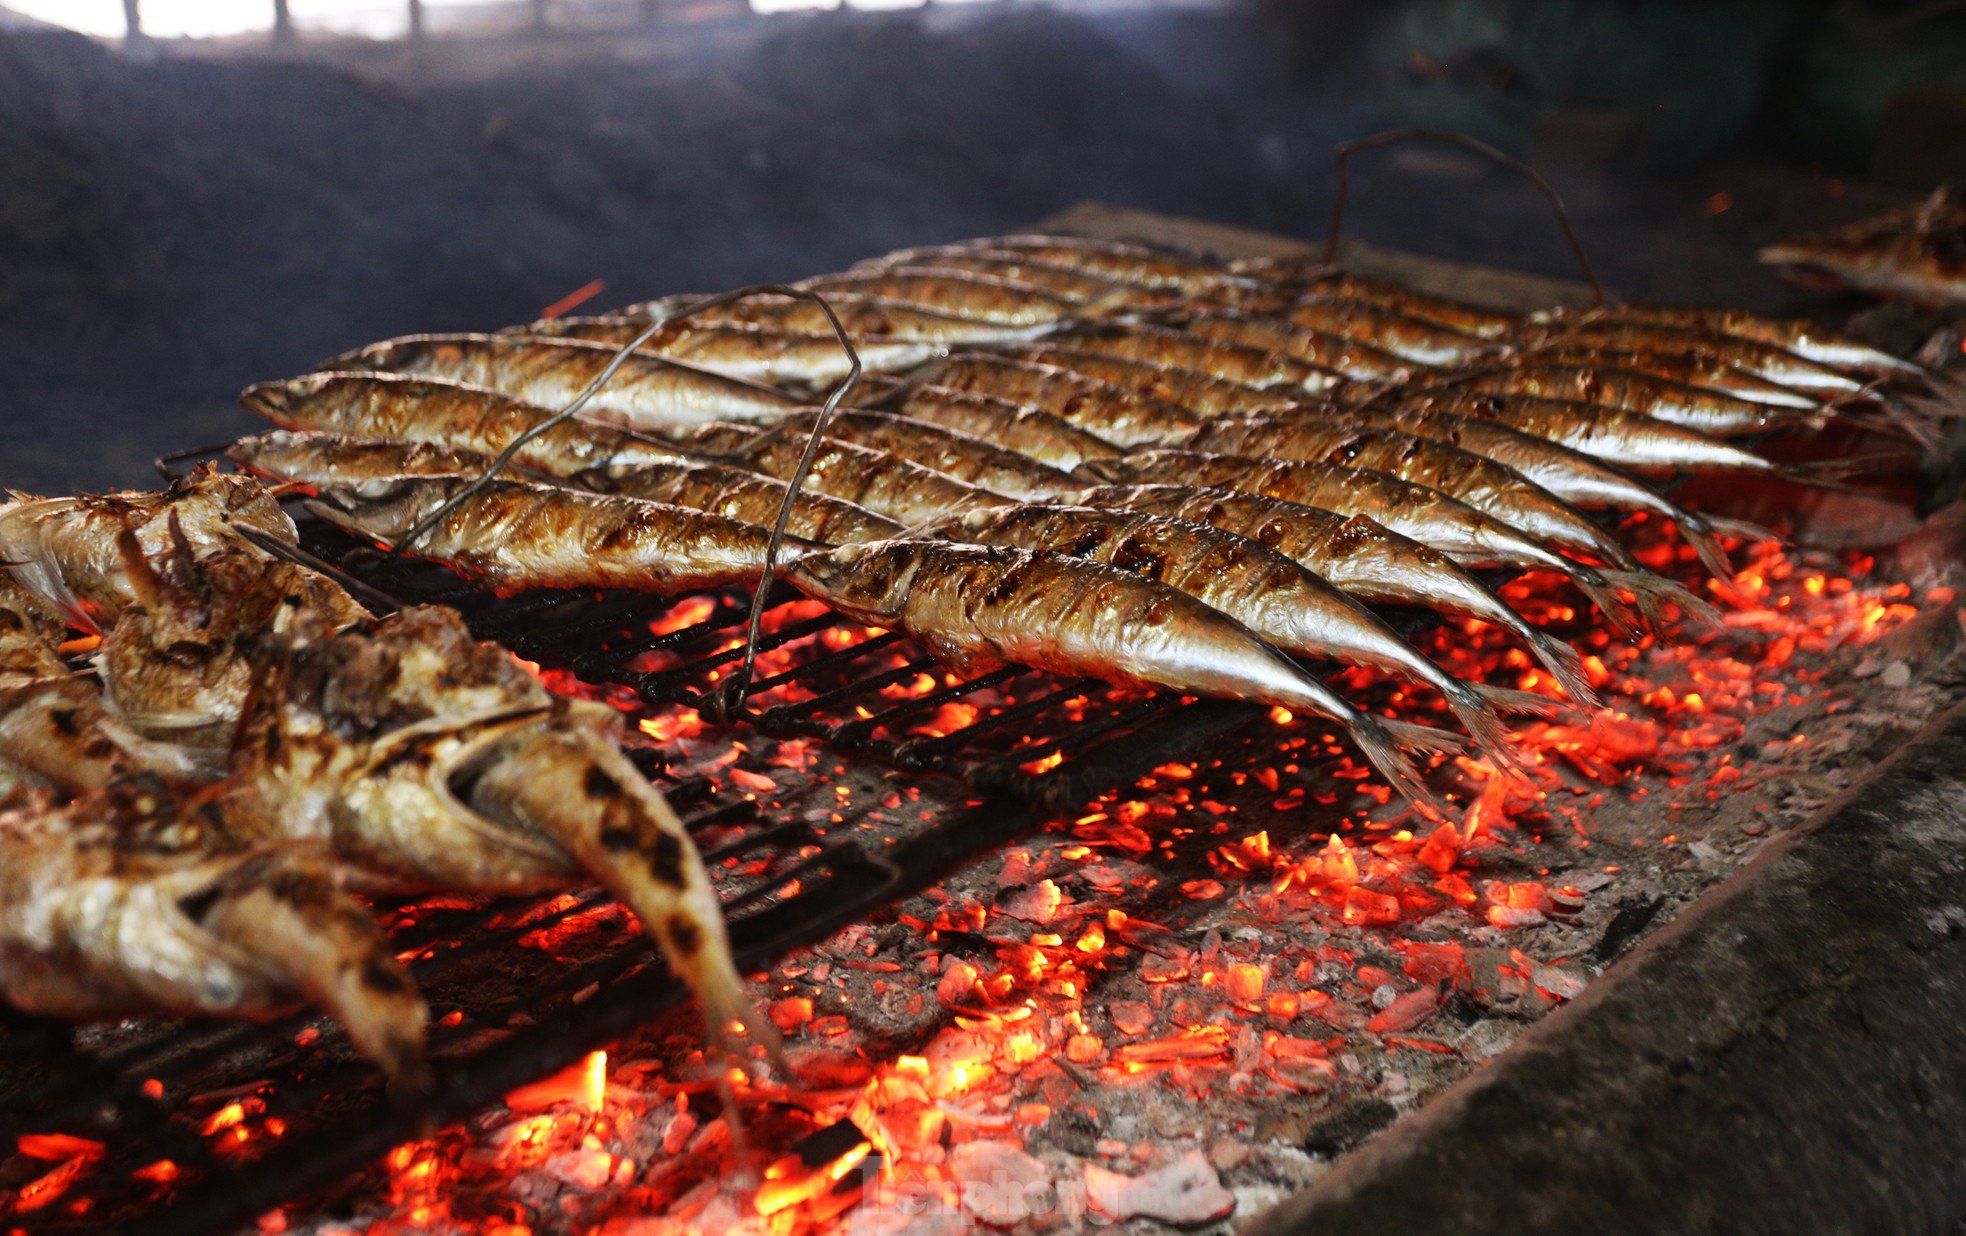 Mỗi mẻ cá nướng cần điều chỉnh lửa, than đỏ đủ độ trong khoảng 10-15 phút. Lúc thấy thân cá chín vàng đều, vảy hơi cháy sém, mỡ cá chảy ra, mùi thơm ngào ngạt.